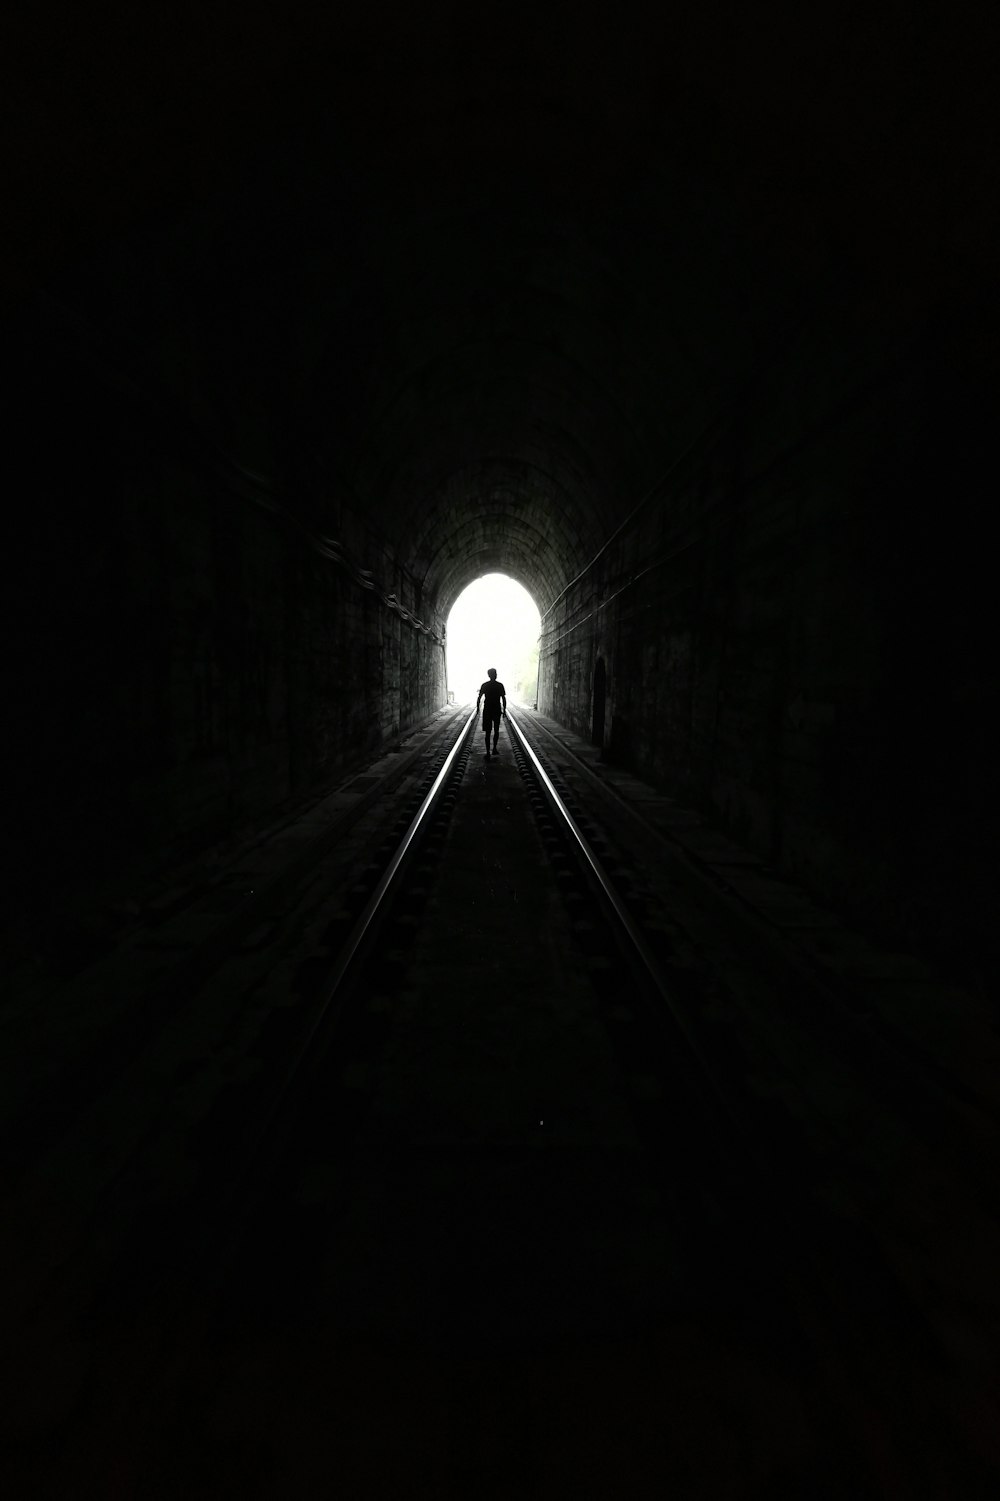 foto in scala di grigi del tunnel con la luce